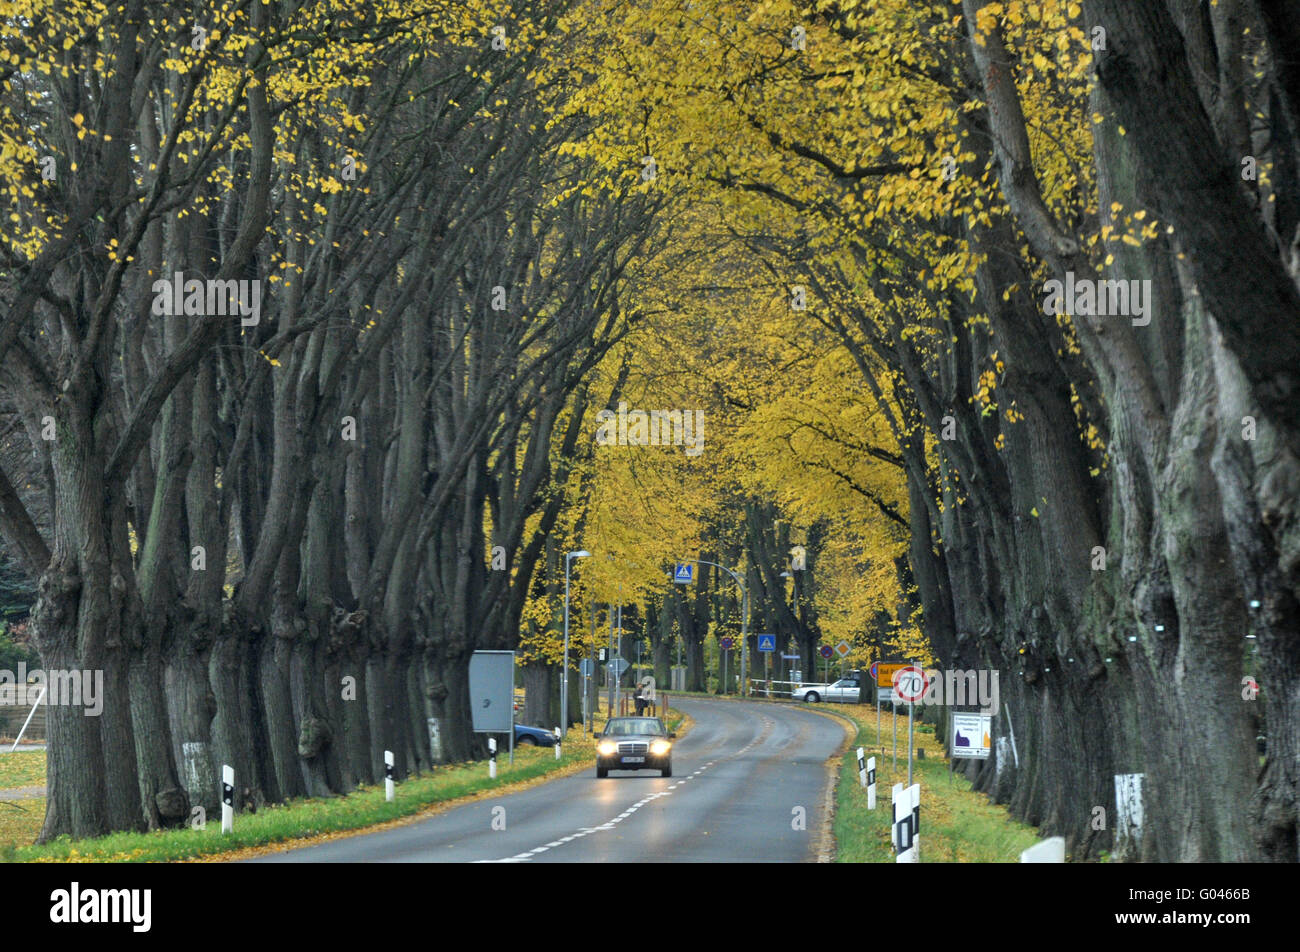 Lime Tree avenue, Bad Doberan, district Rostock, Mecklenburg-Vorpommern, Allemagne Banque D'Images